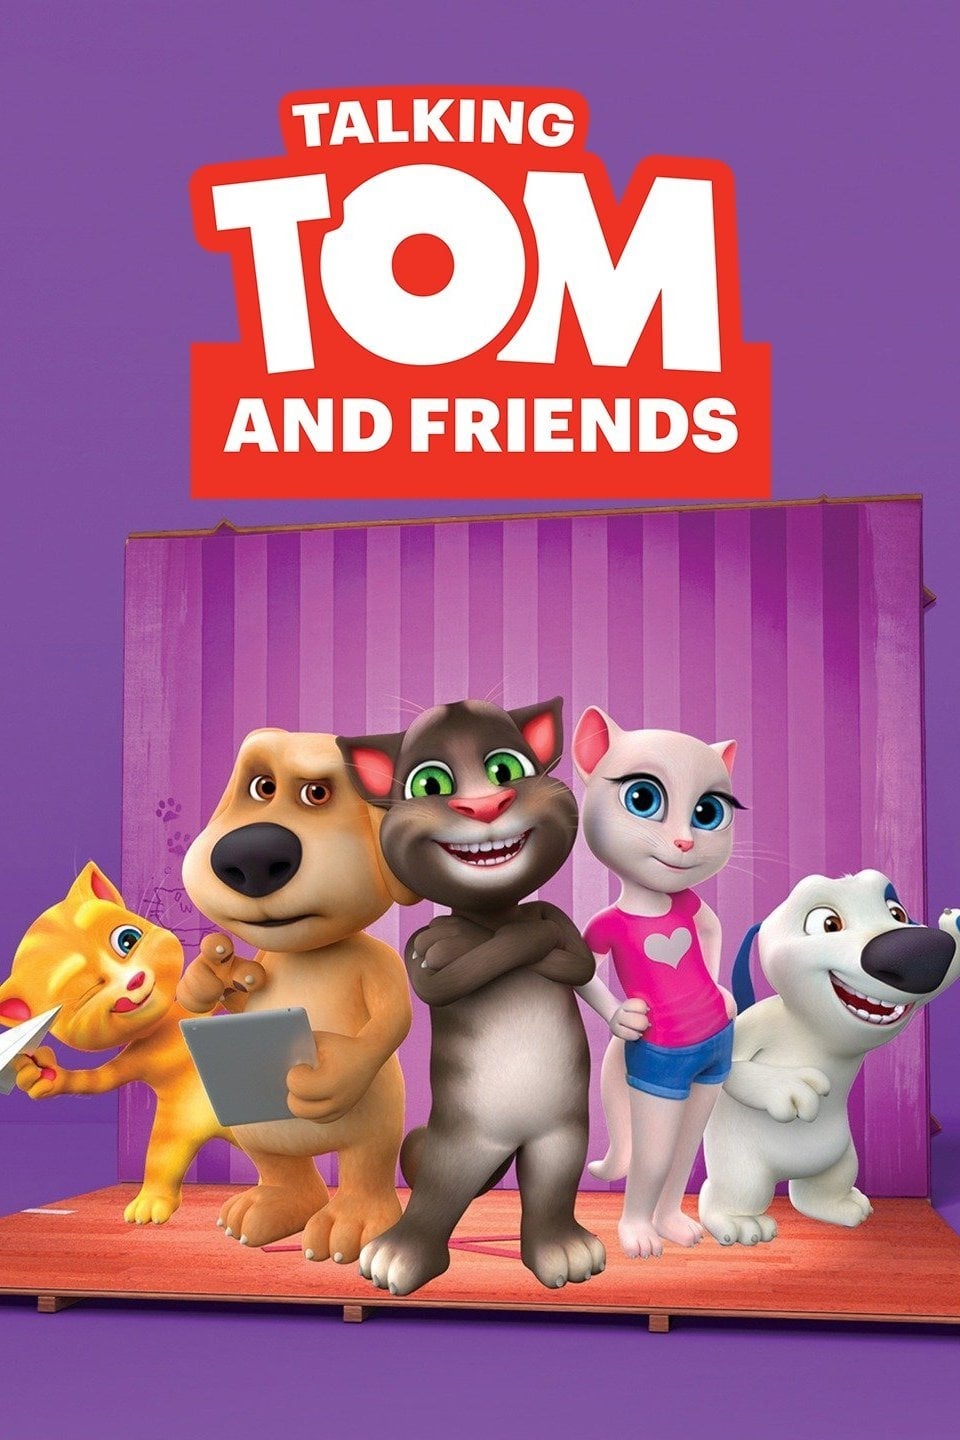 Talking Tom & Friends - Wikipedia